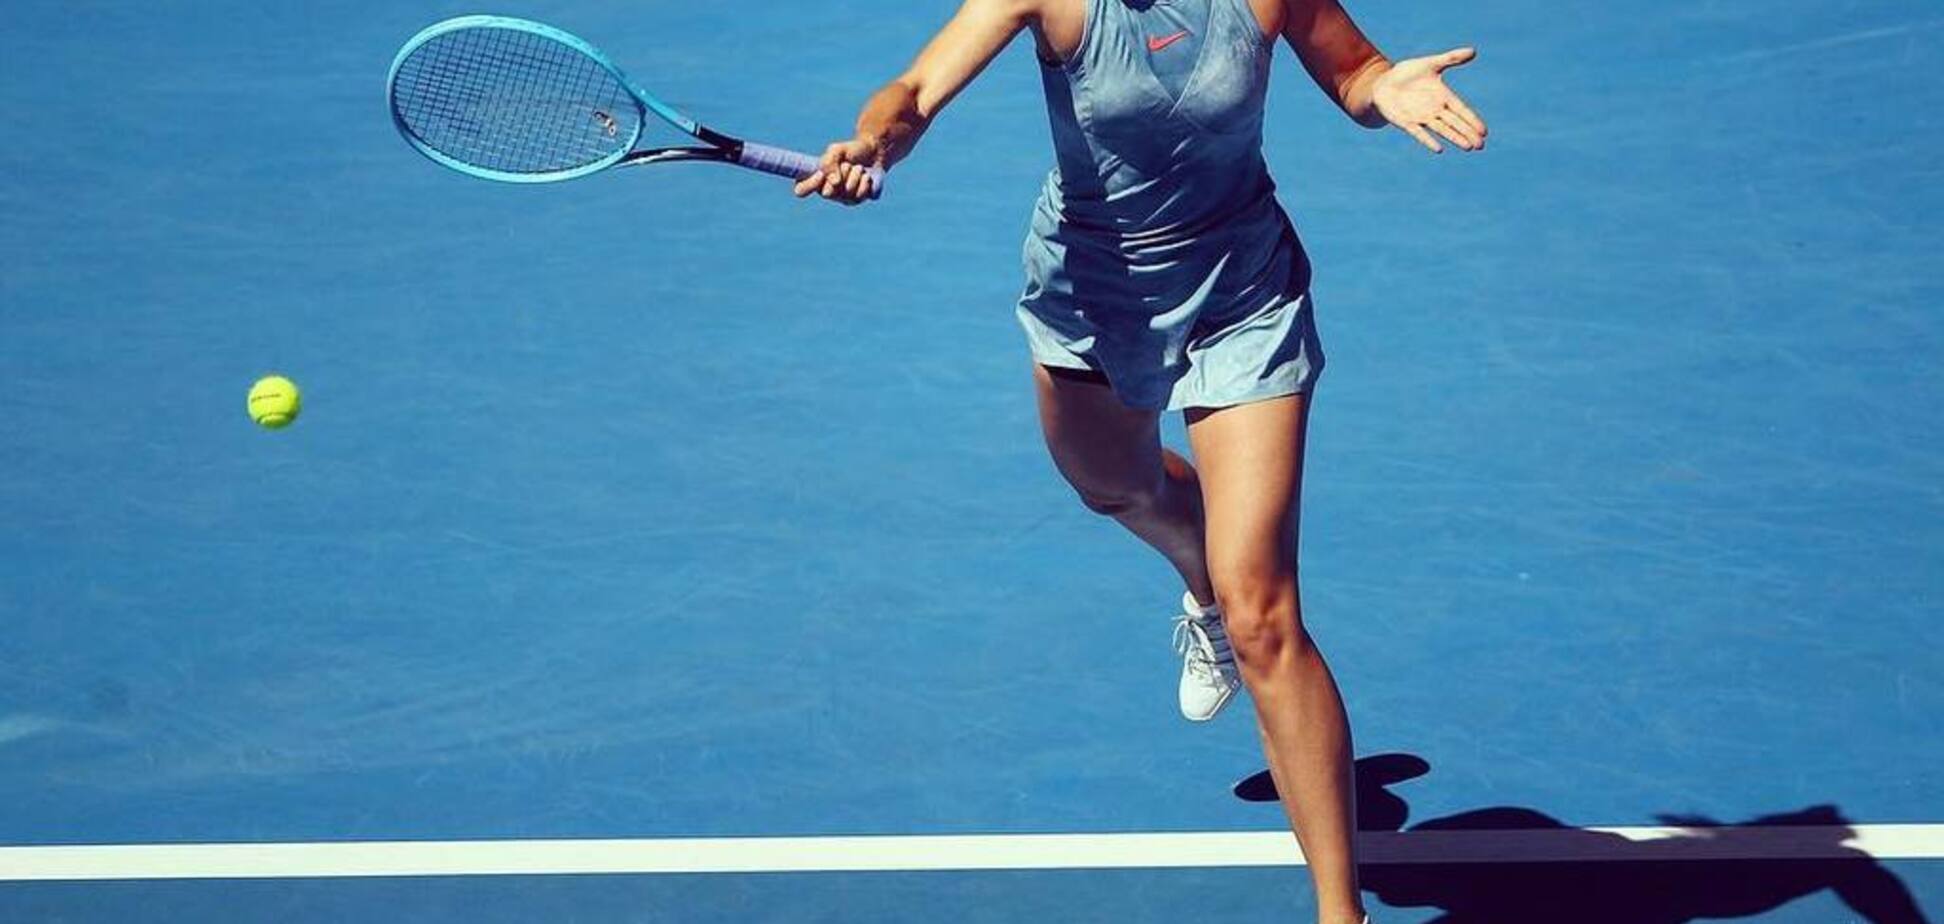 Шарапова потрапила в епічний курйоз на Australian Open: момент потрапив на відео